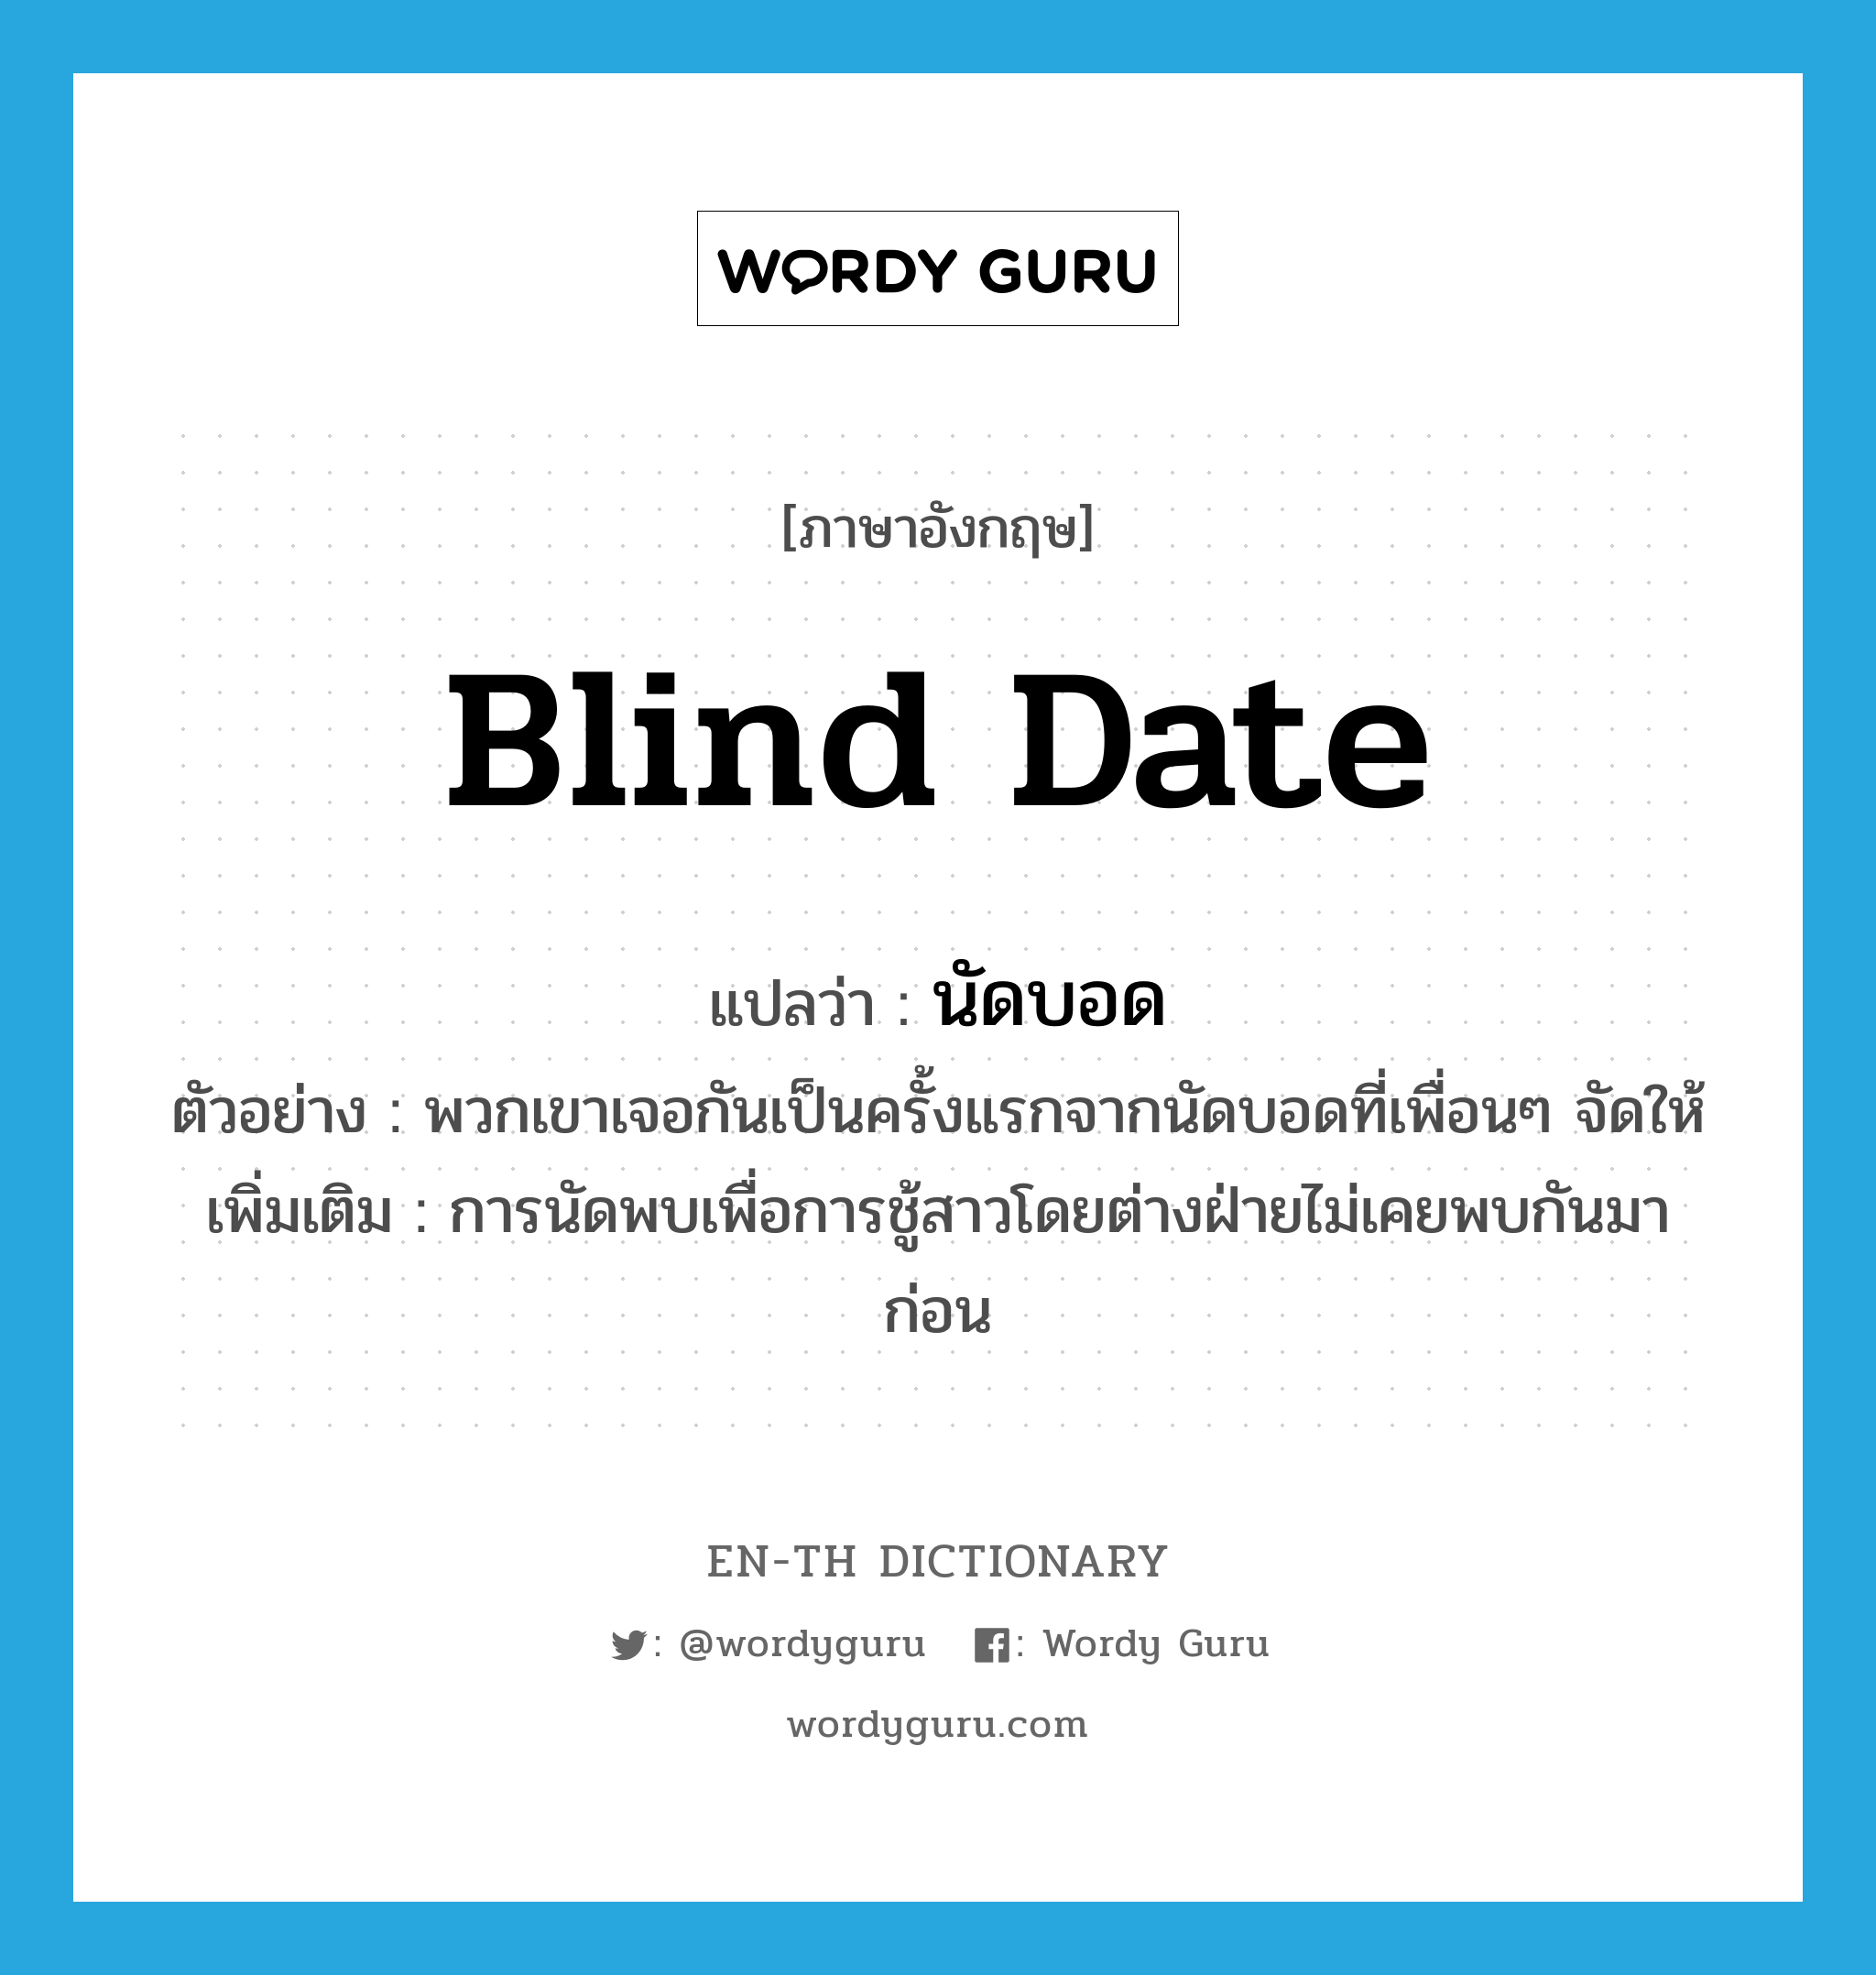 blind date แปลว่า?, คำศัพท์ภาษาอังกฤษ blind date แปลว่า นัดบอด ประเภท N ตัวอย่าง พวกเขาเจอกันเป็นครั้งแรกจากนัดบอดที่เพื่อนๆ จัดให้ เพิ่มเติม การนัดพบเพื่อการชู้สาวโดยต่างฝ่ายไม่เคยพบกันมาก่อน หมวด N